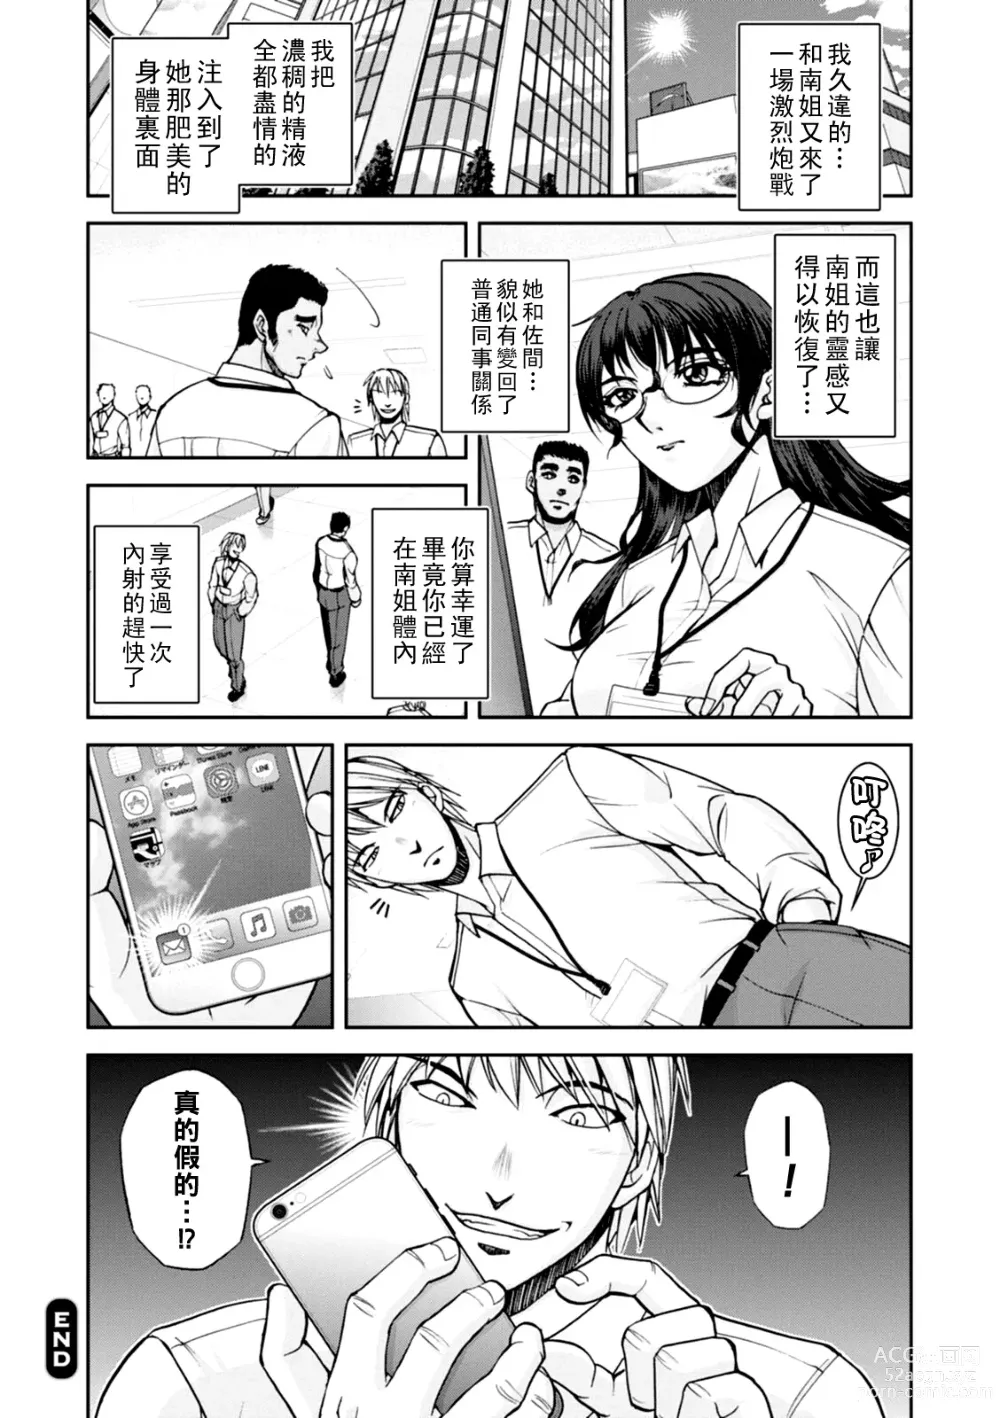 Page 75 of manga Maruhadaka no Minami-san Ch. 1-4